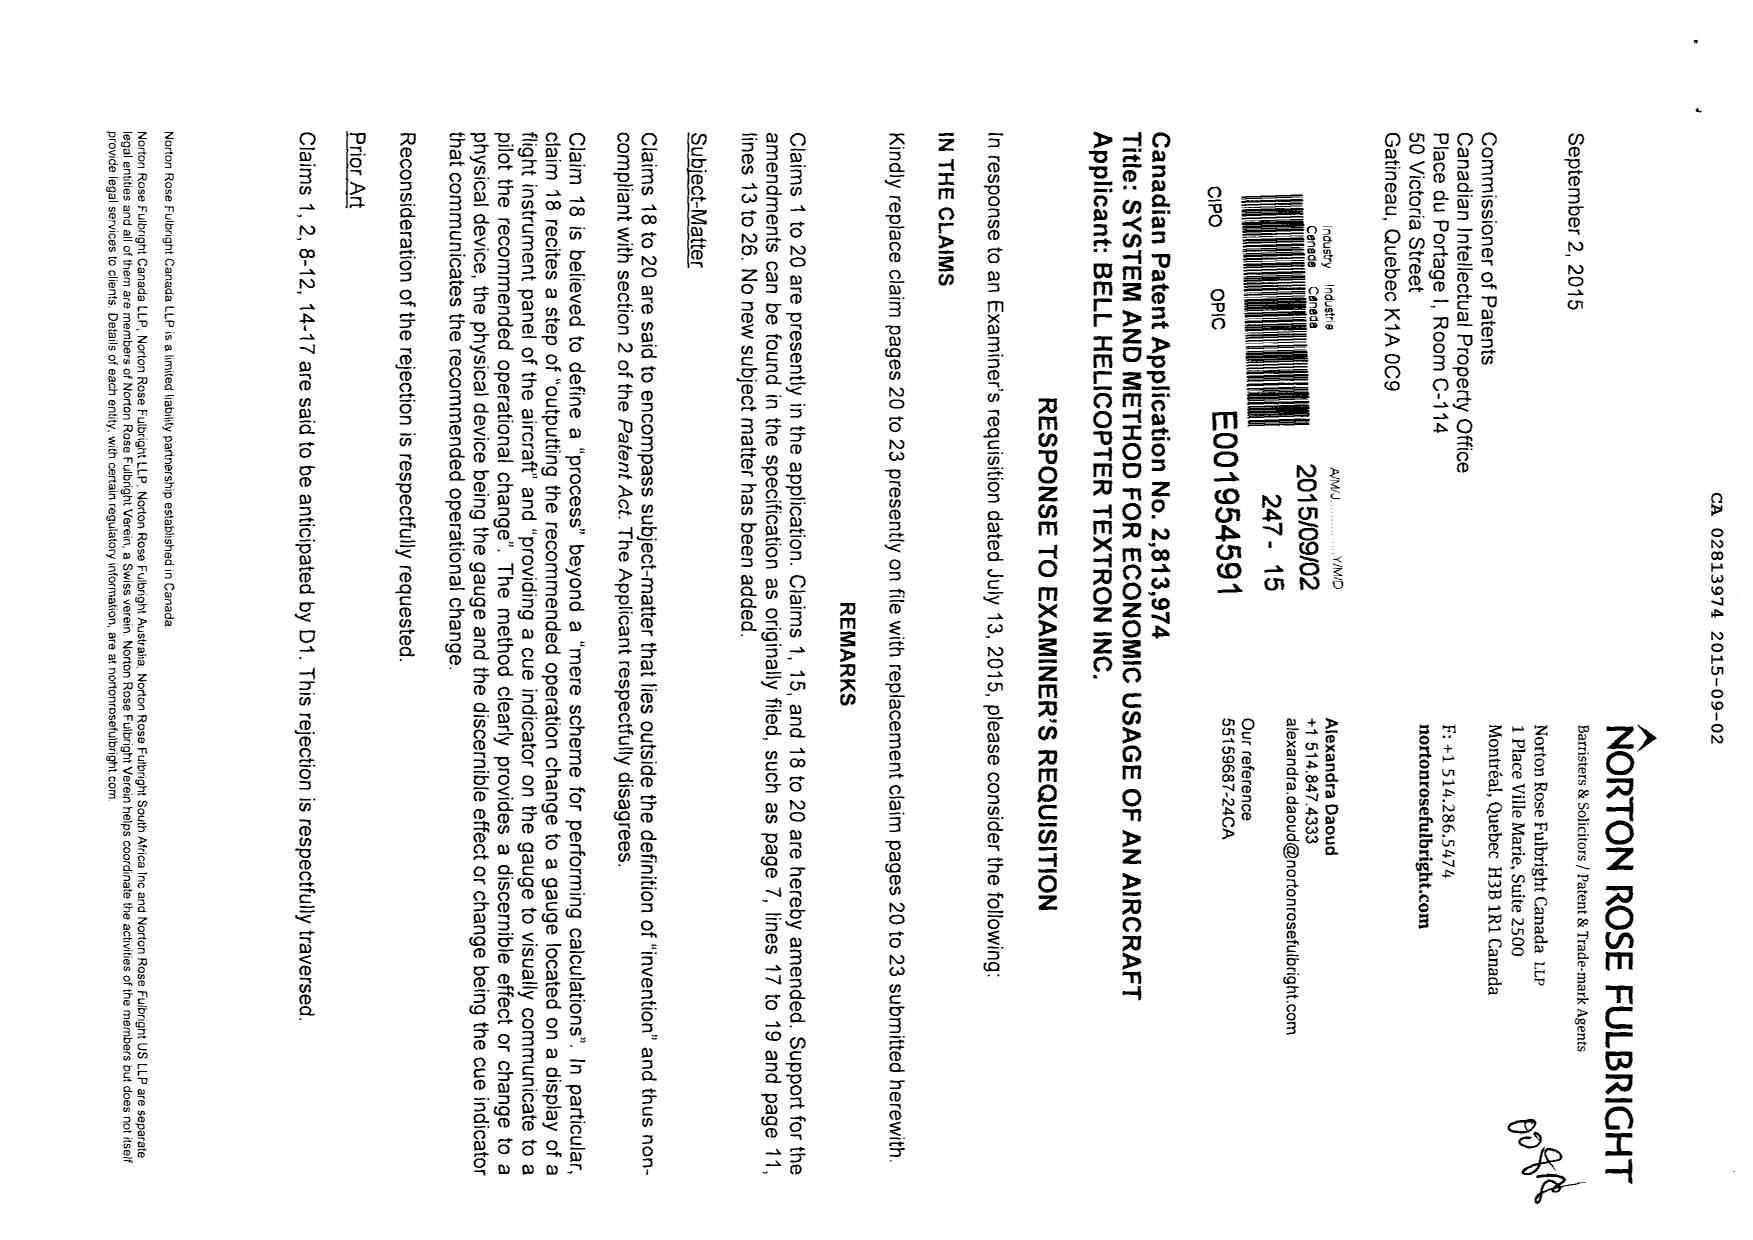 Document de brevet canadien 2813974. Poursuite-Amendment 20141202. Image 1 de 6